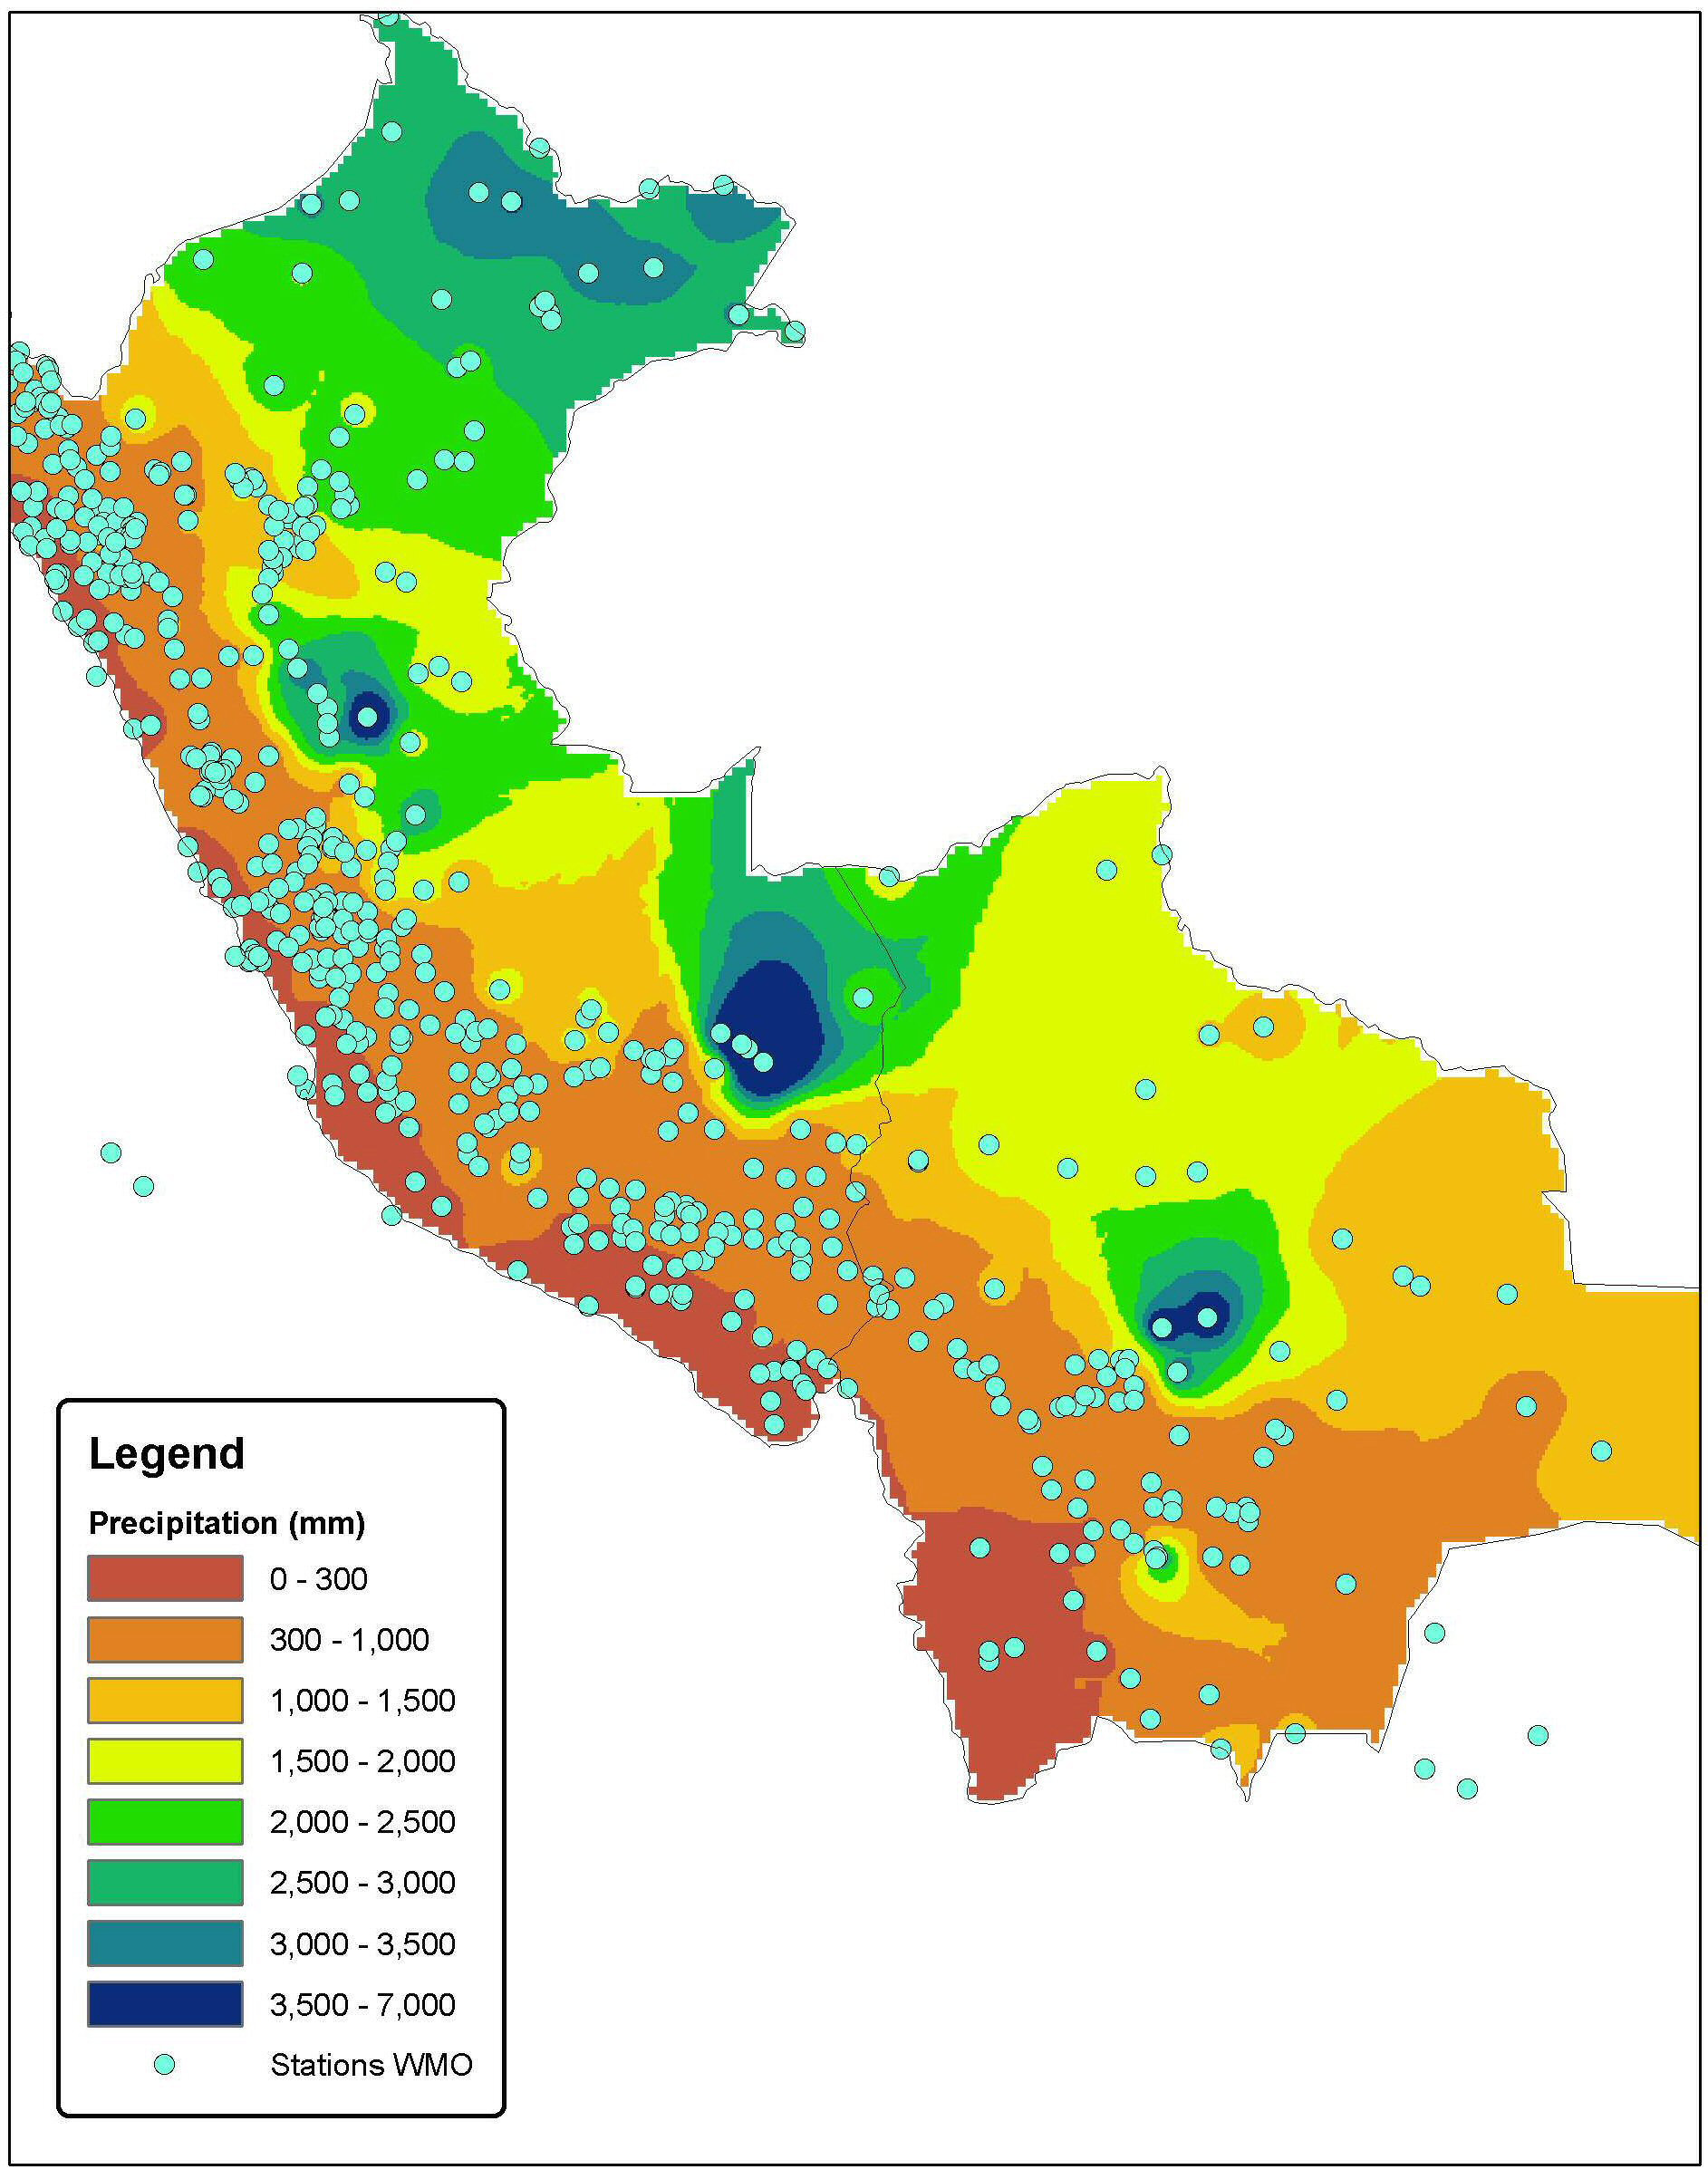 Karte der Niederschlagsmengen in Bolivien und Peru